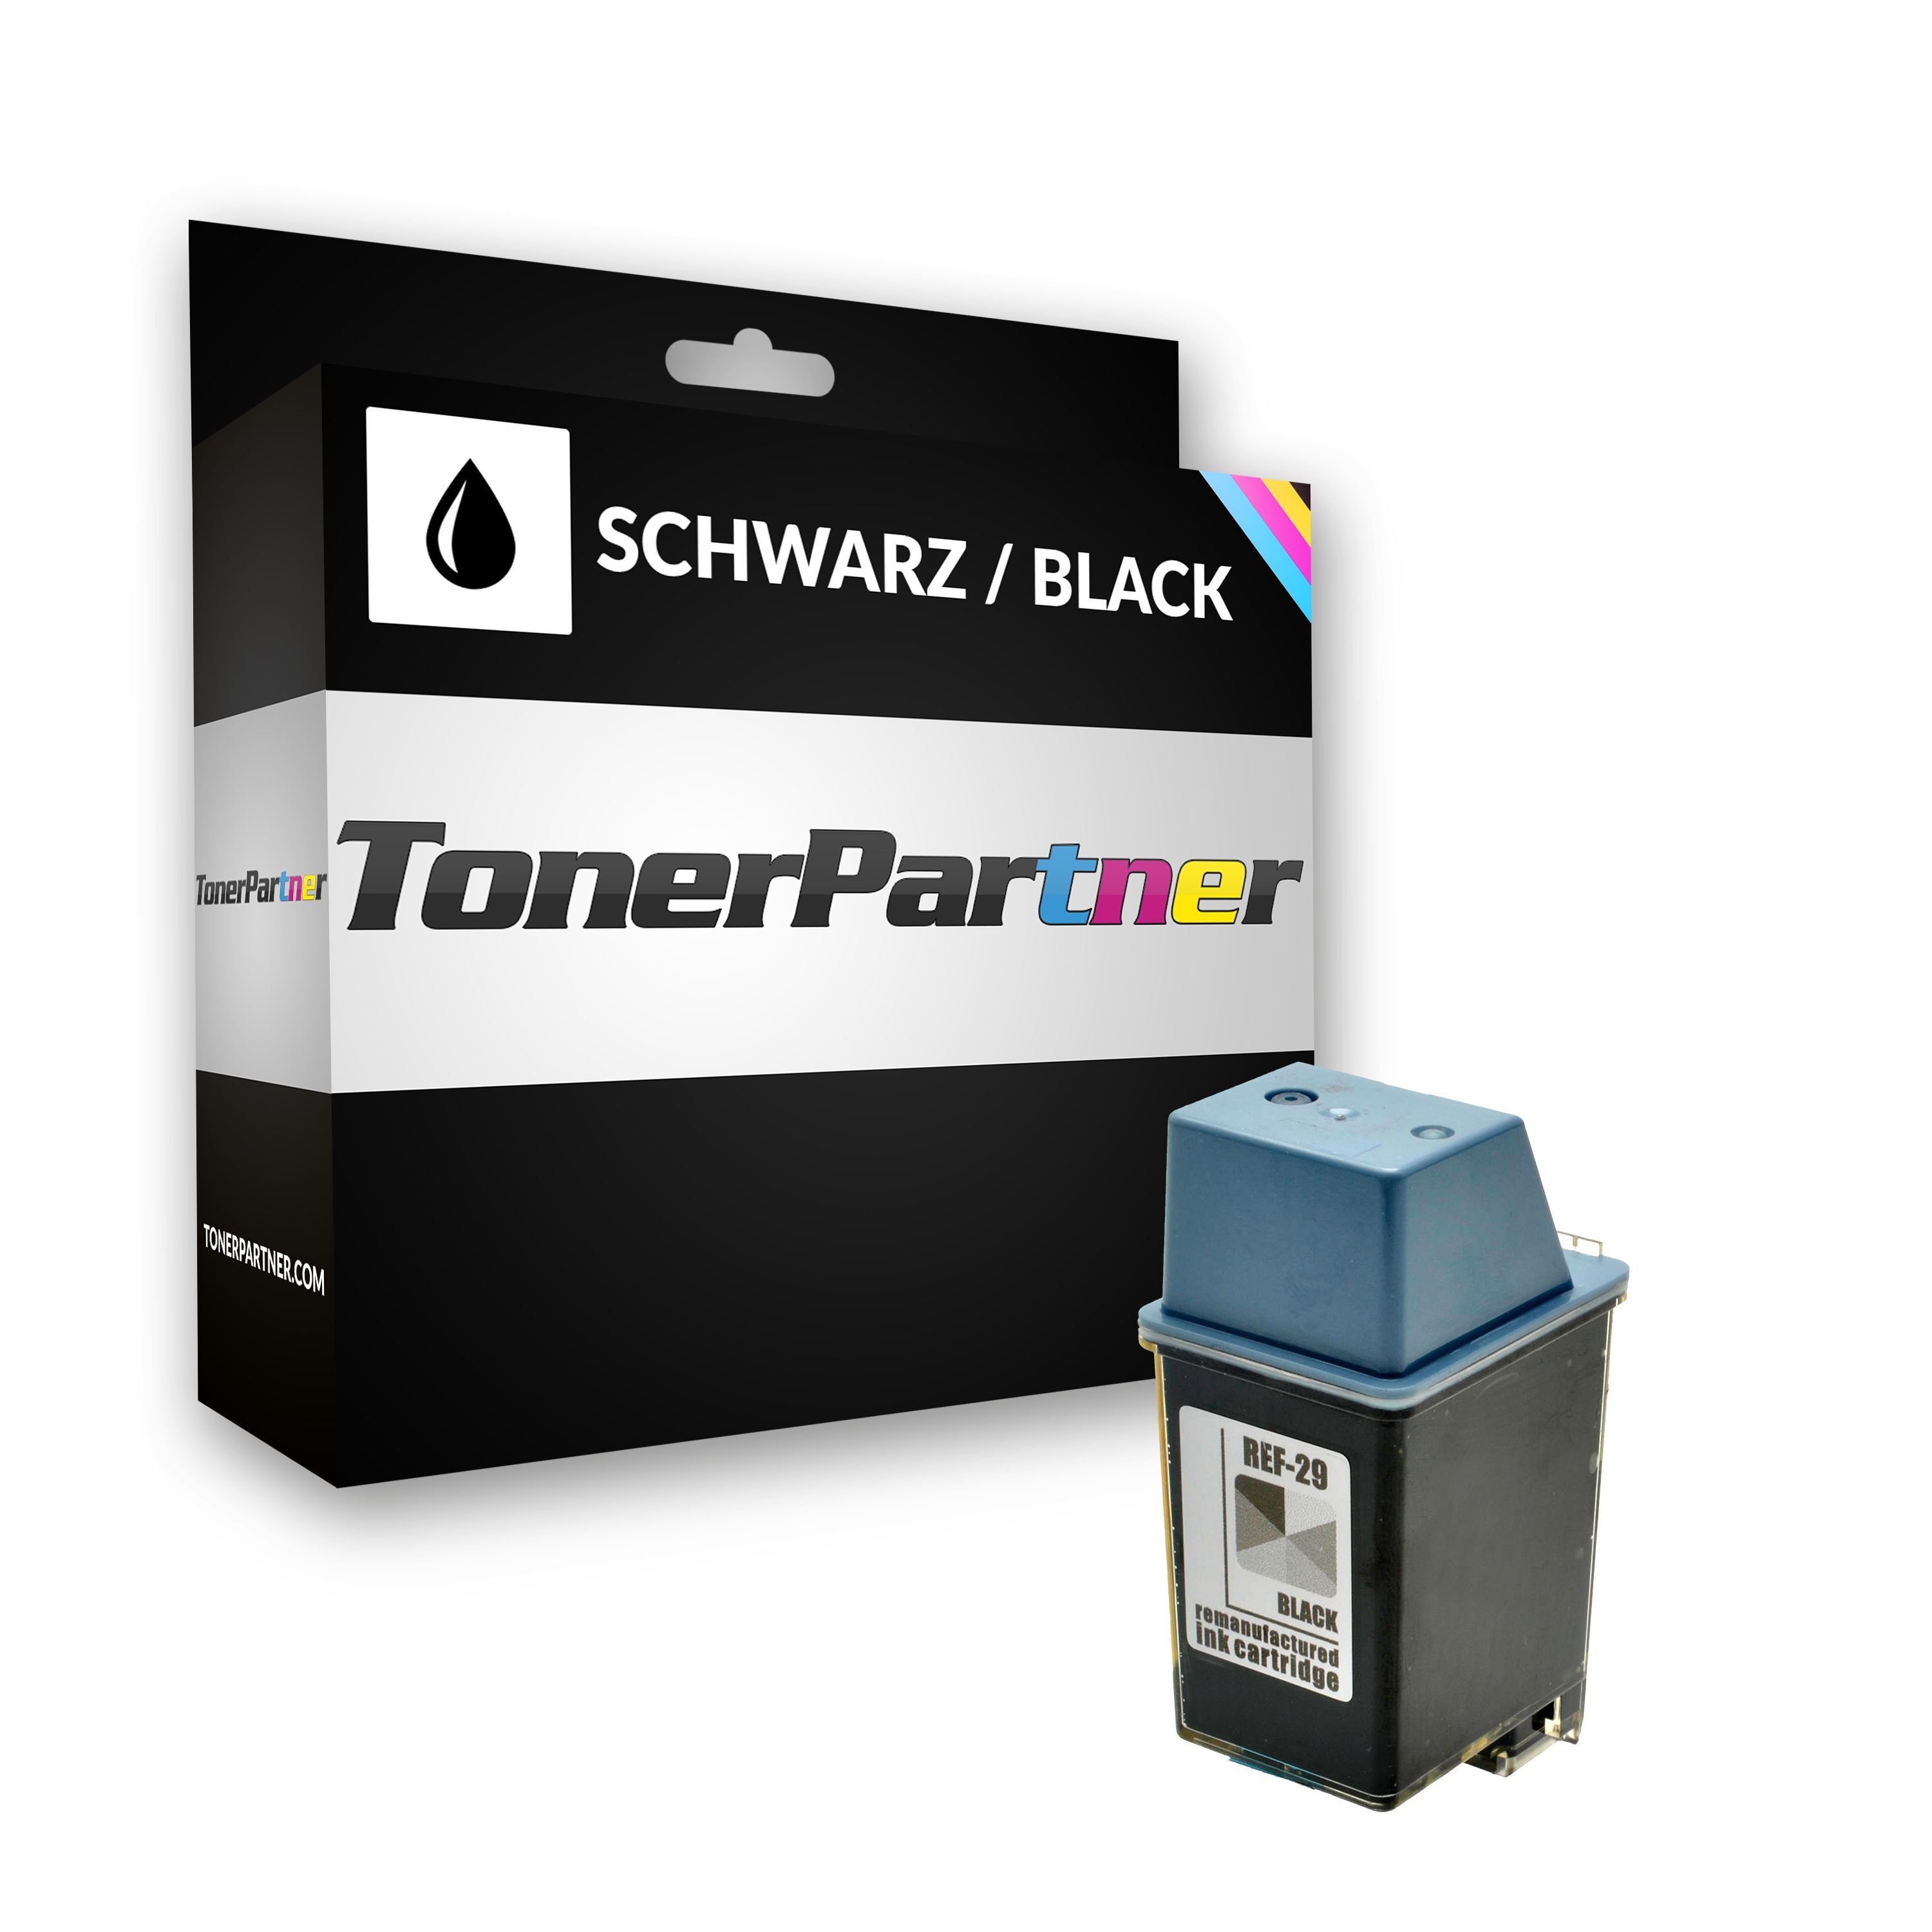 TonerPartner Kompatibel zu HP Deskwriter 690 C Tintenpatrone (29 / 51629 AE) schwarz, 650 Seiten, 3,03 Rp pro Seite, Inhalt: 40 ml von TonerPartner